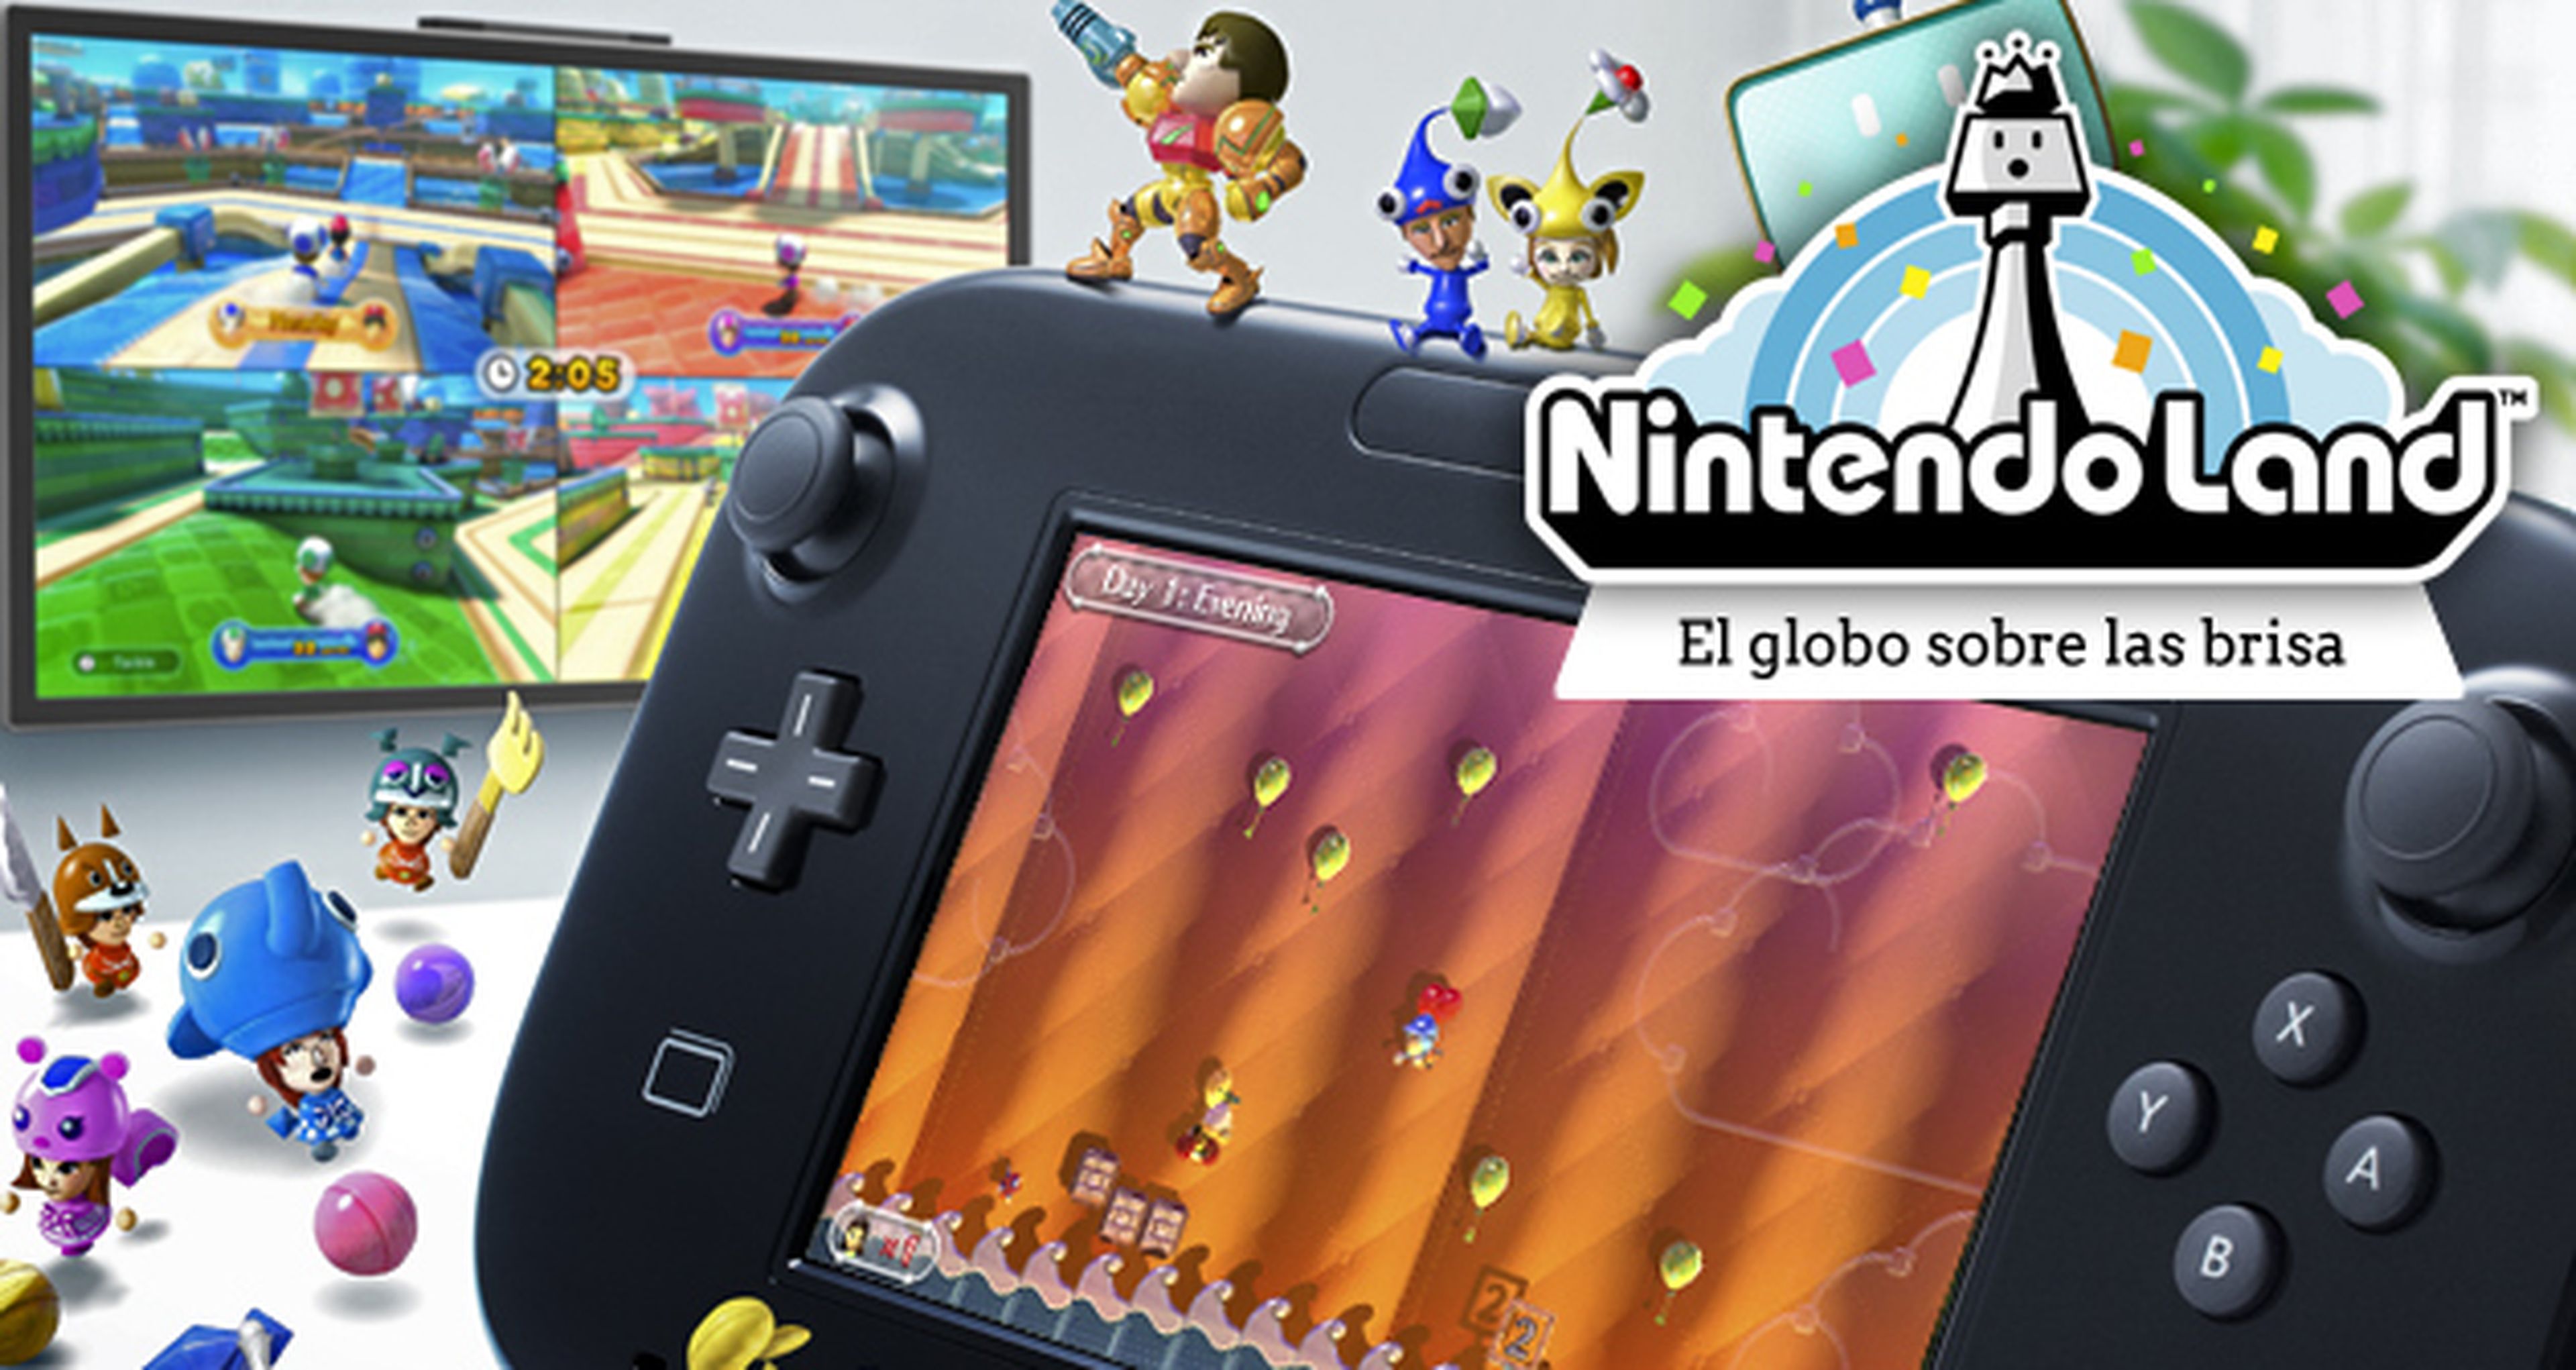 Nintendo Land: El globo sobre la brisa